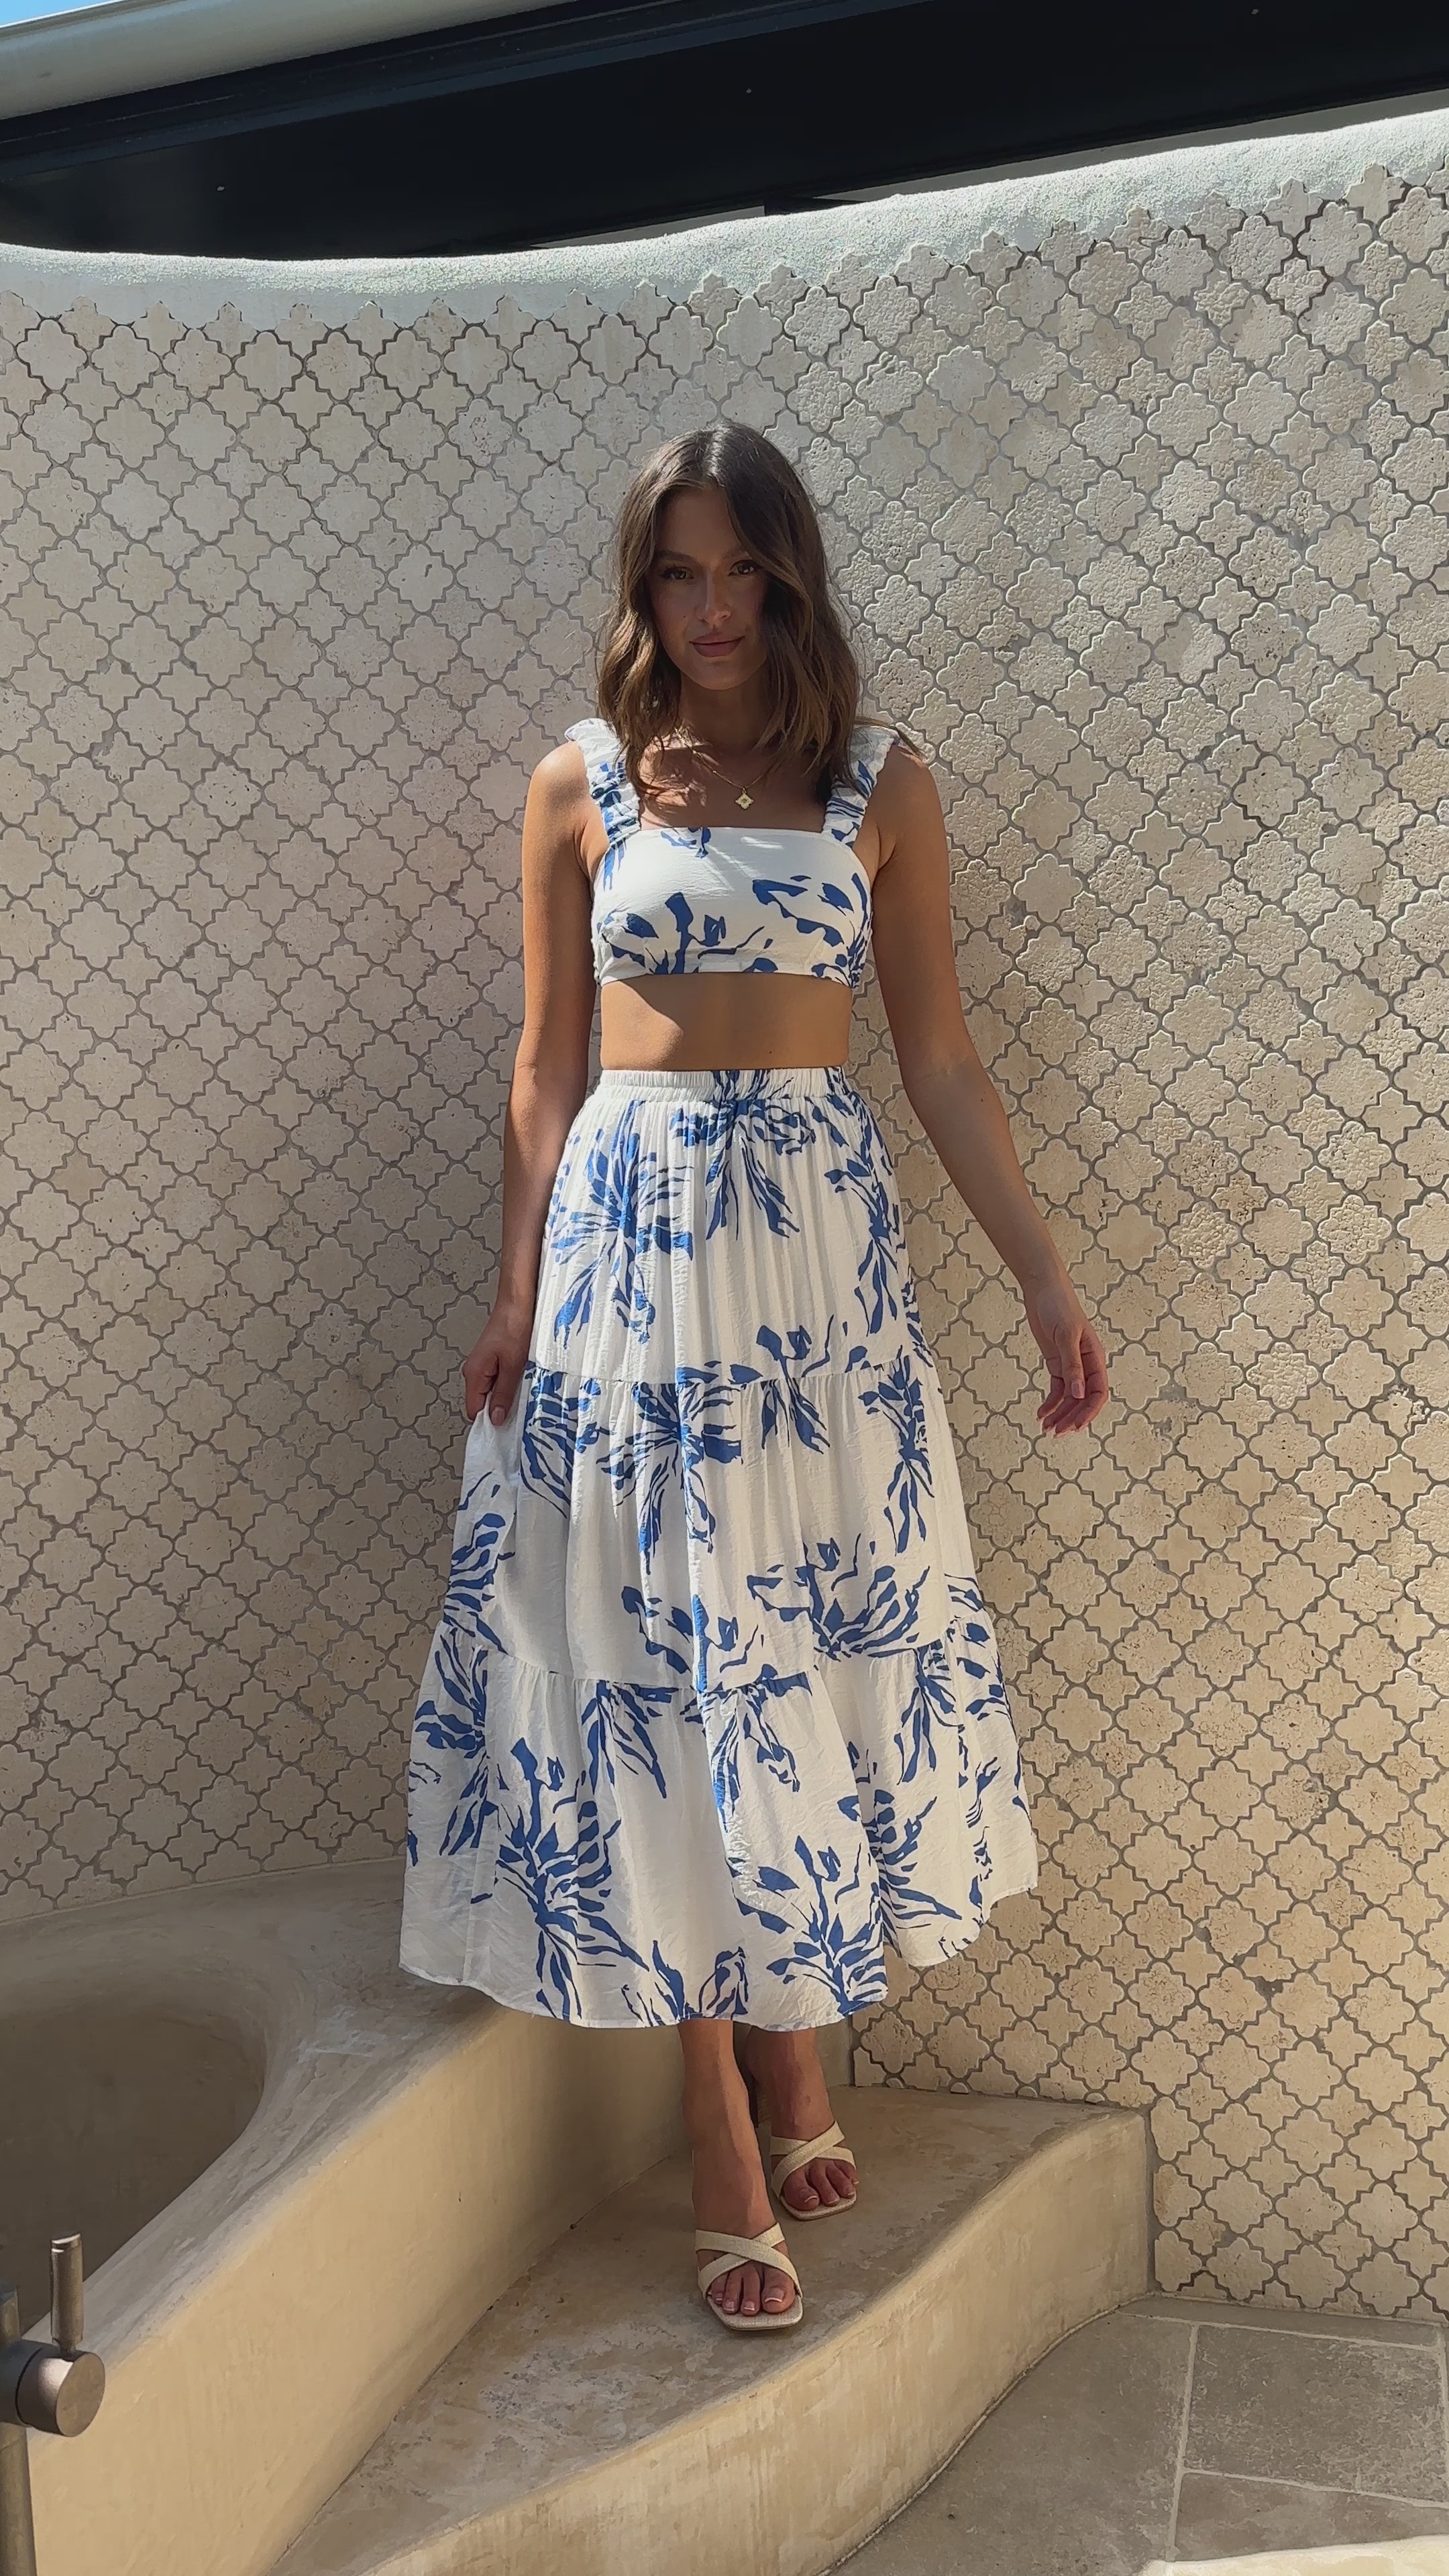 Adaya Maxi Skirt - Blue Summer